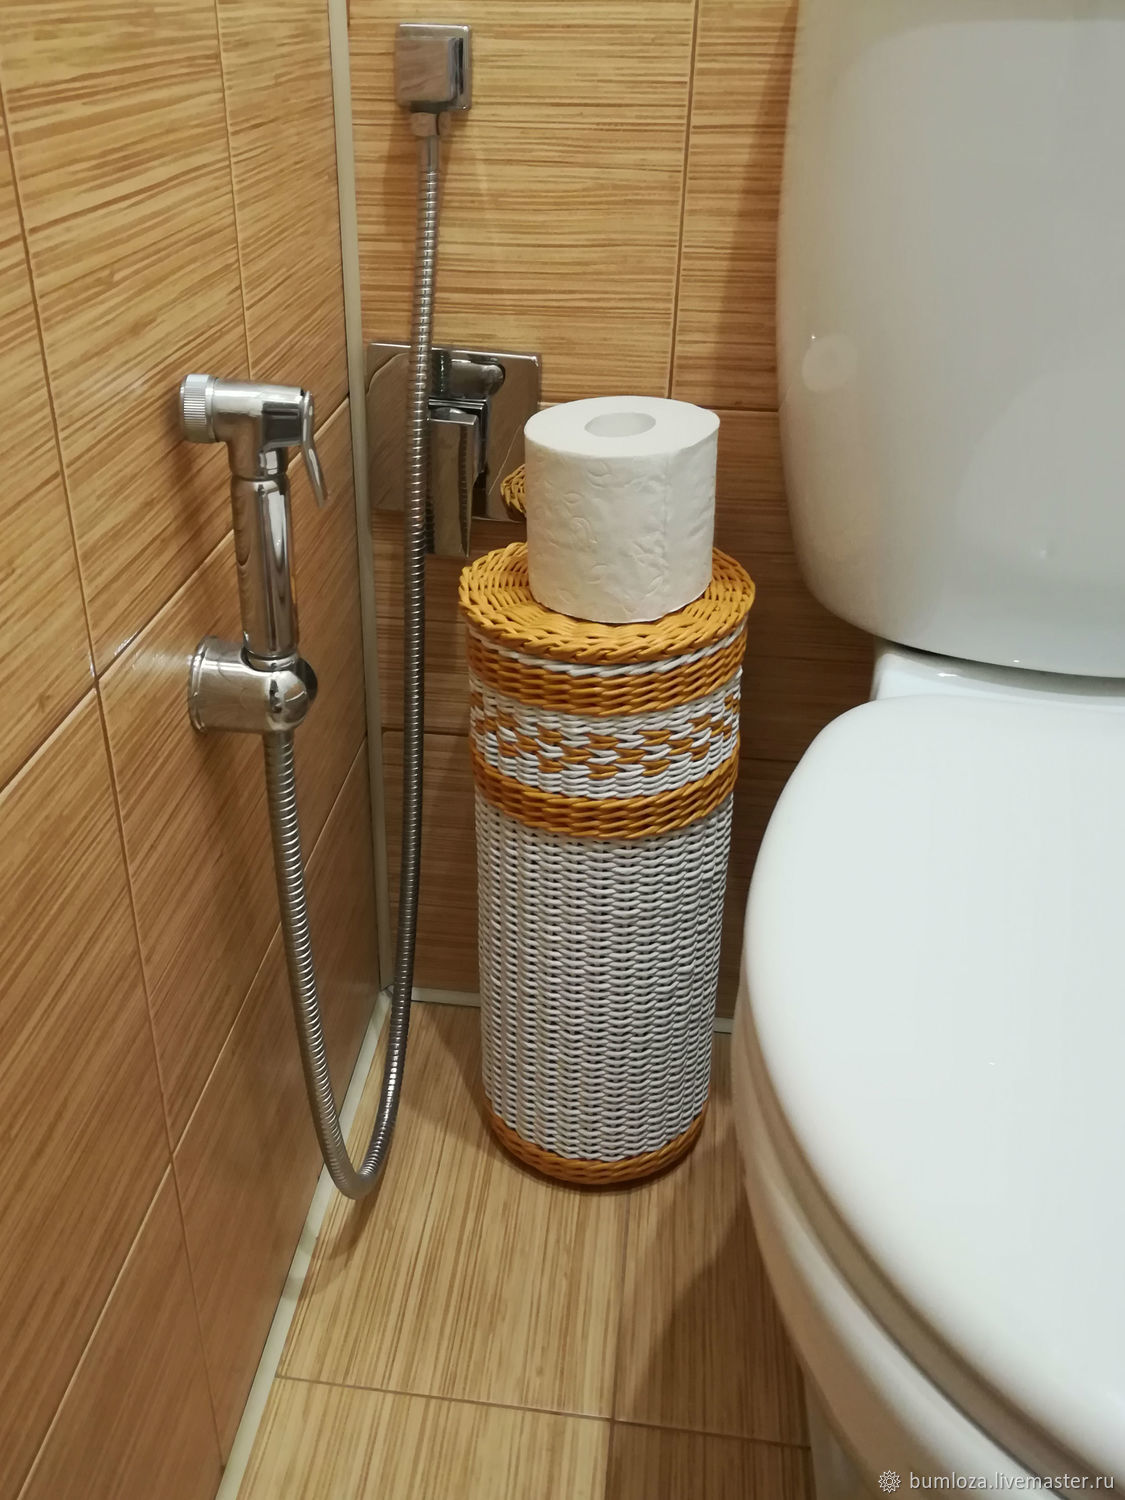 Полки для ванной комнаты – купить в интернет-магазине Likemyhome